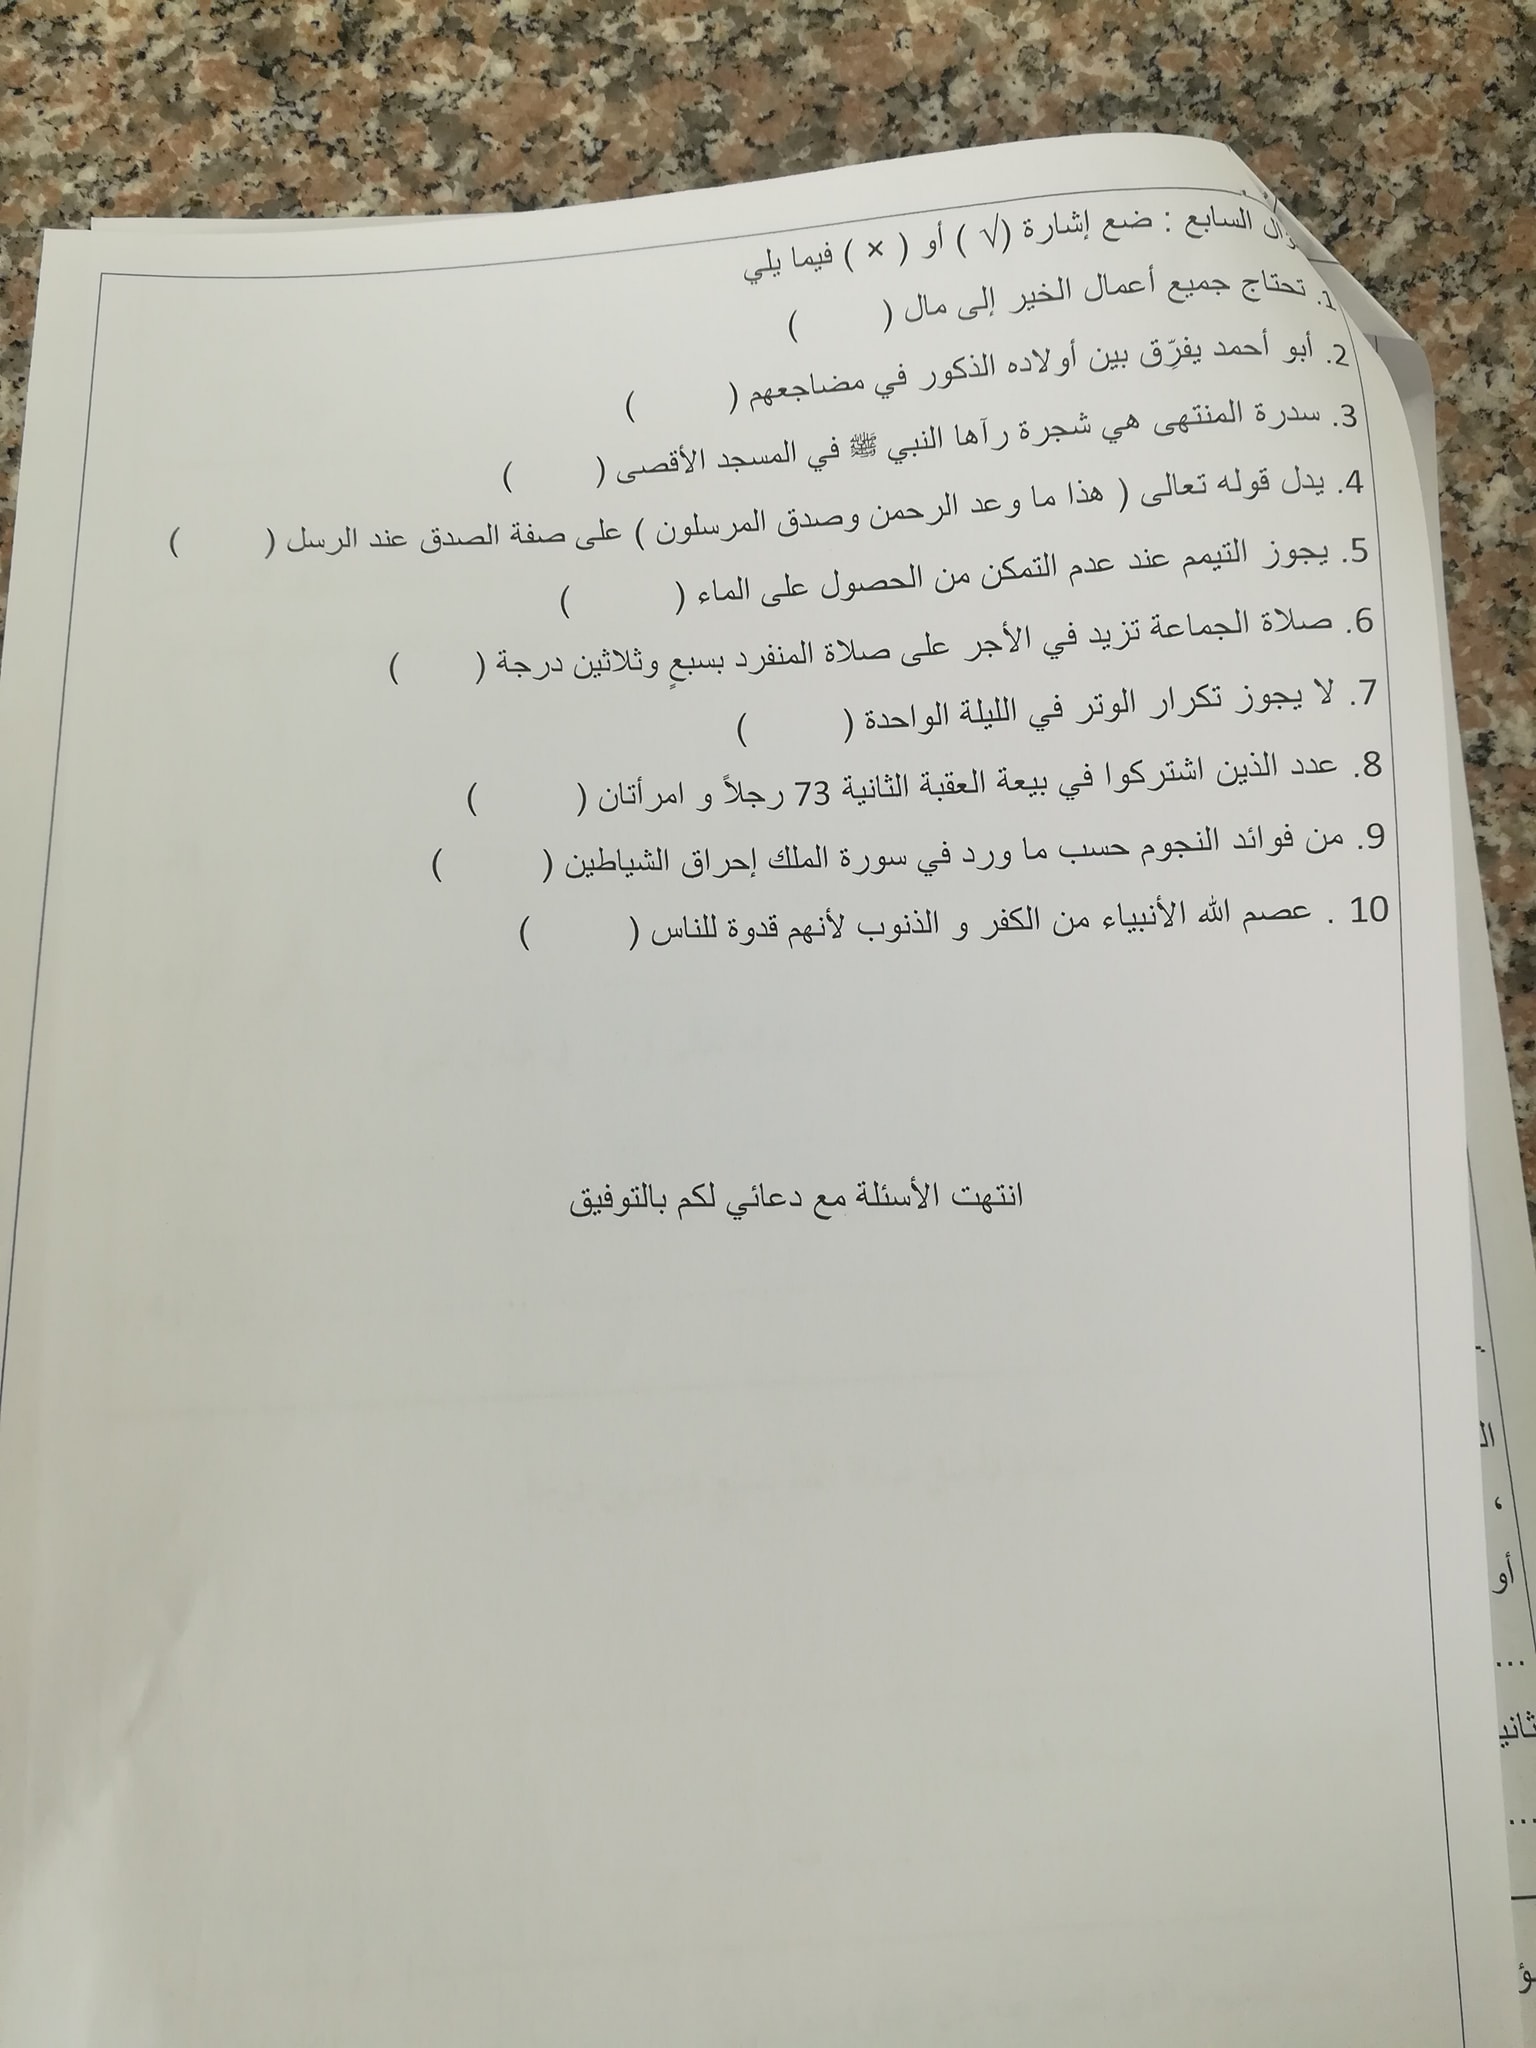 3 صور امتحان نهائي لمادة التربية الاسلامية للصف الخامس الفصل الاول 2021.jpg